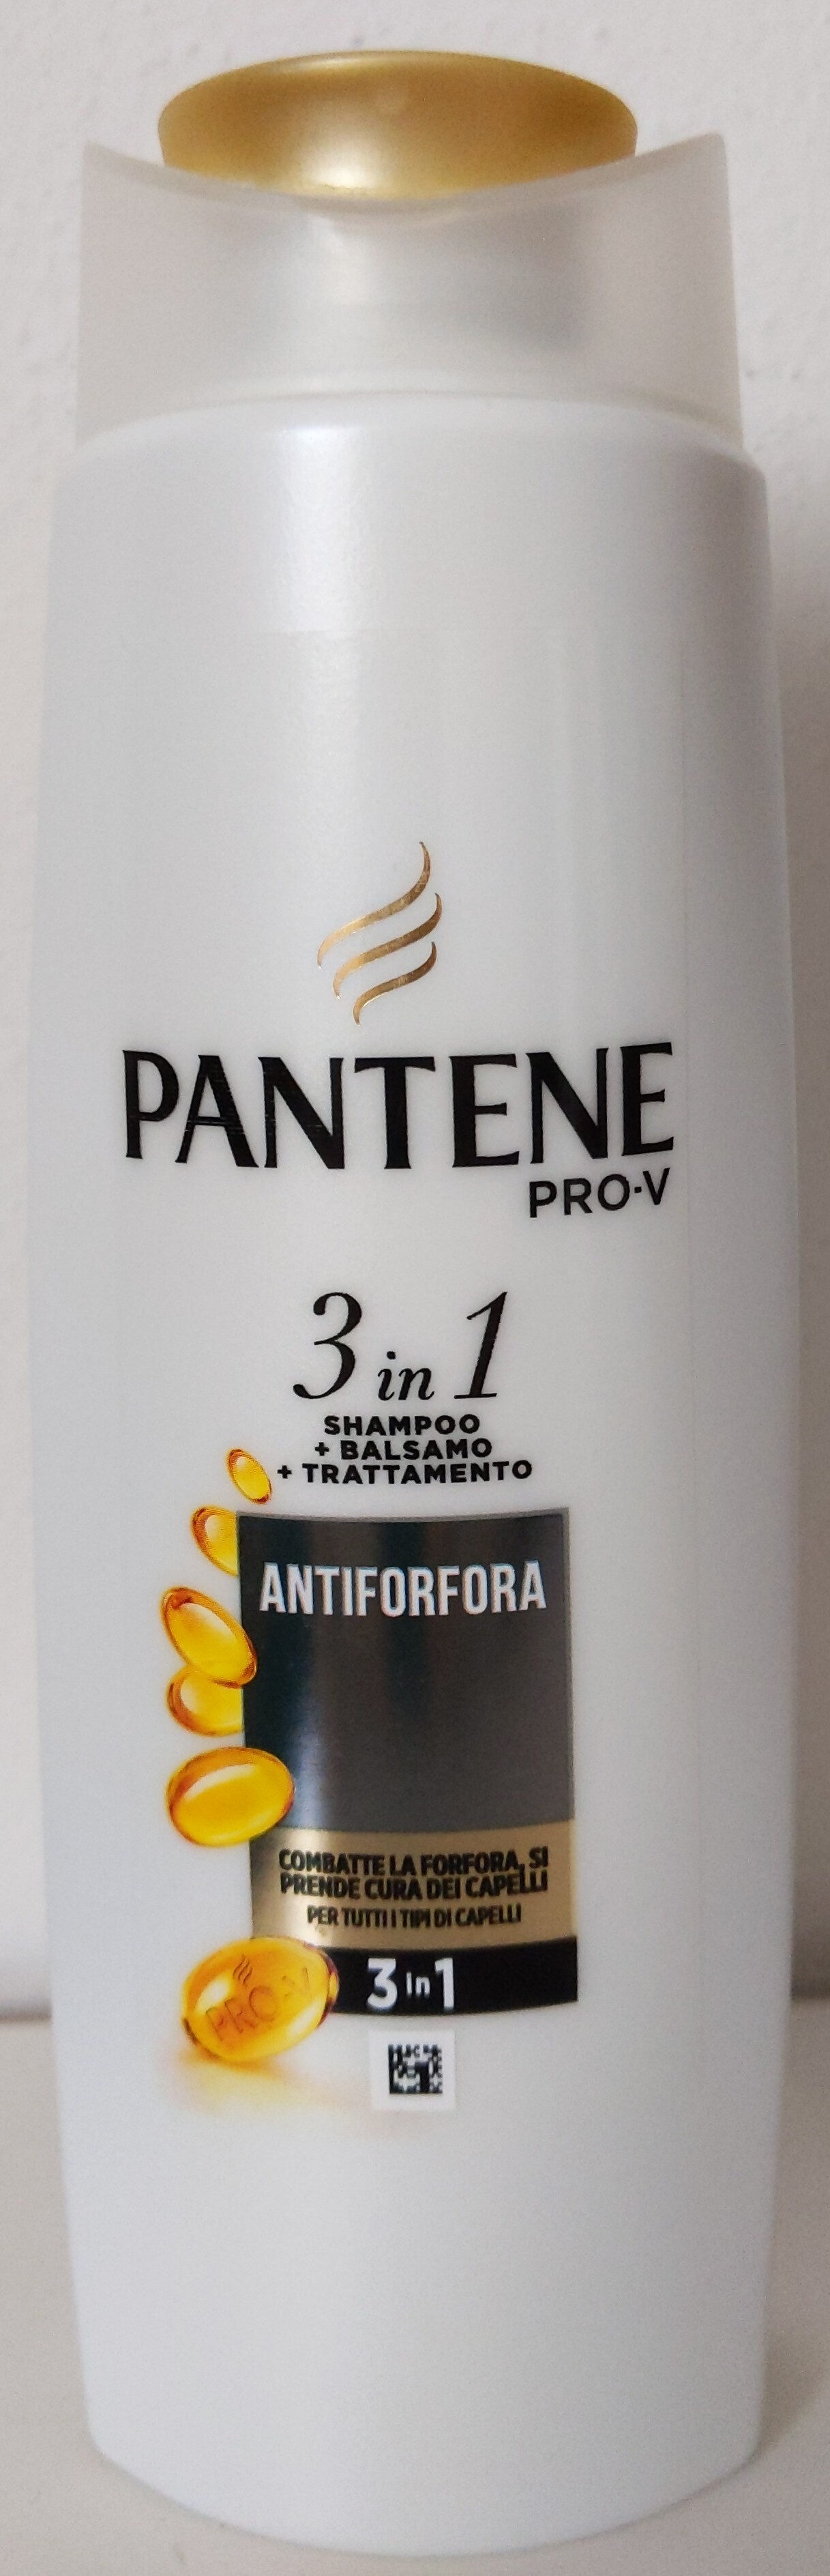 Pantene Pro-V 3 in 1 Shampoo + Balsamo + trattamento - Tuote - it